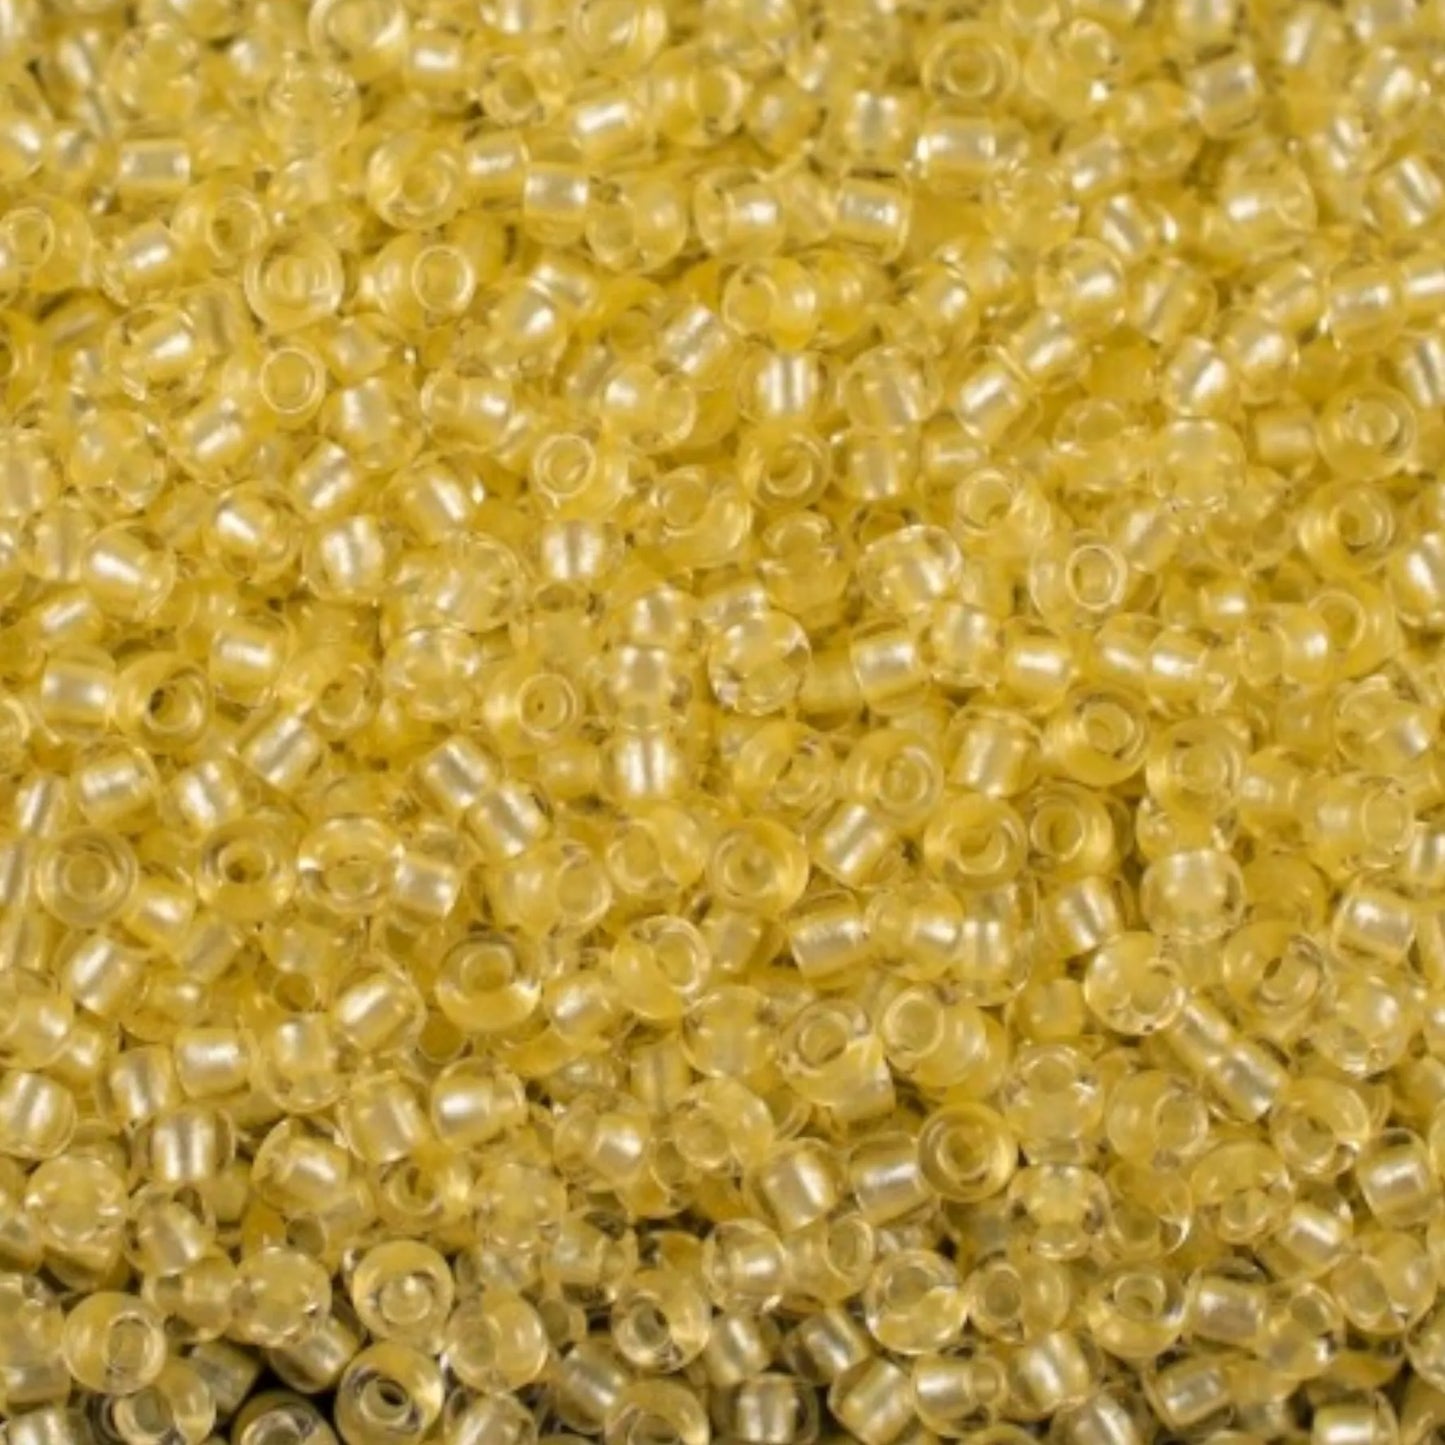 38286 Tschechische Rocailles PRECIOSA Rocailles 10/0 gelb. Kristall – Terra Pearl gefüttert.